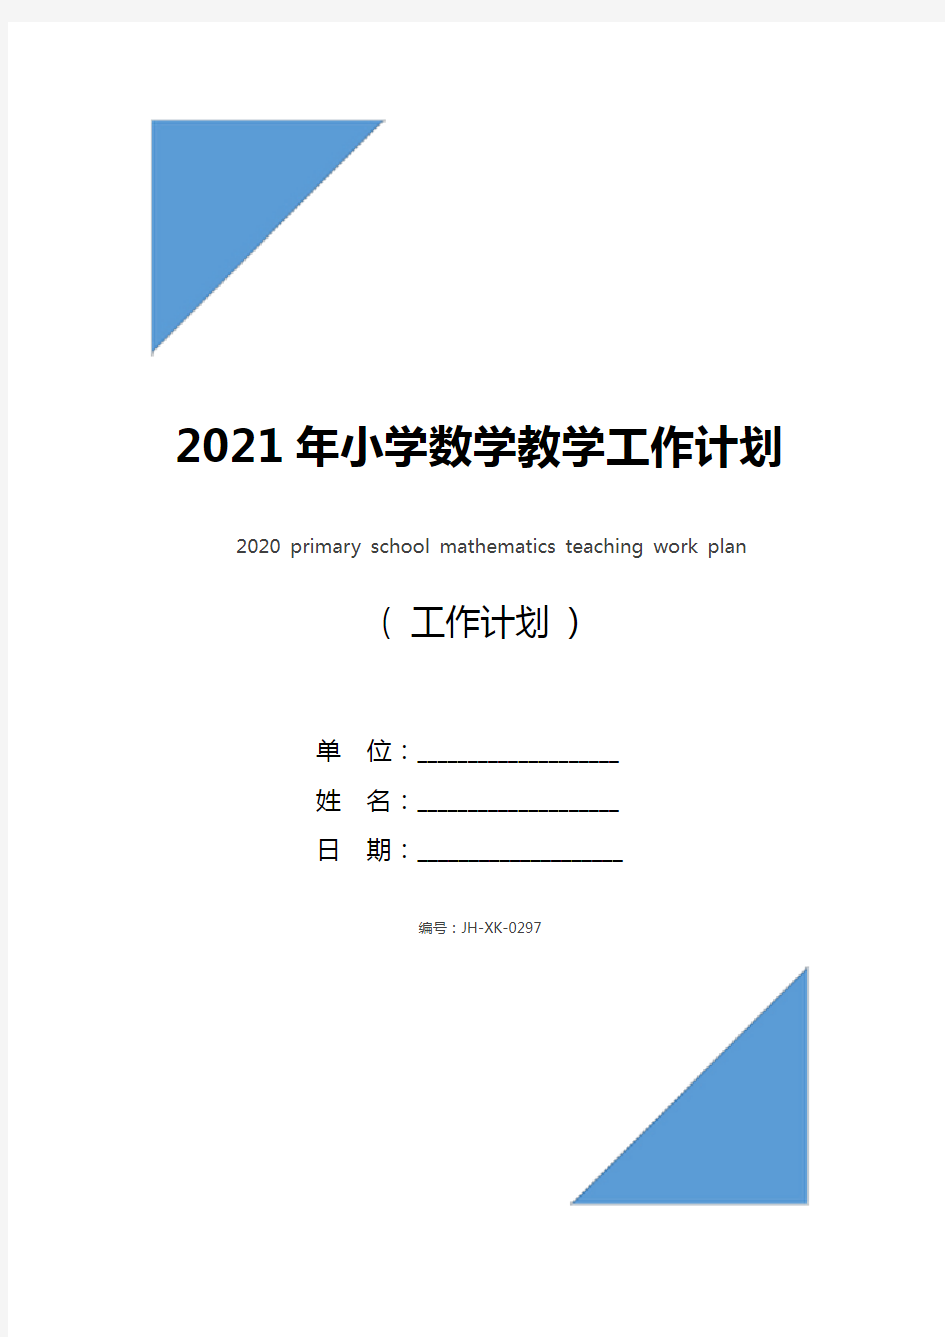 2021年小学数学教学工作计划(标准版)